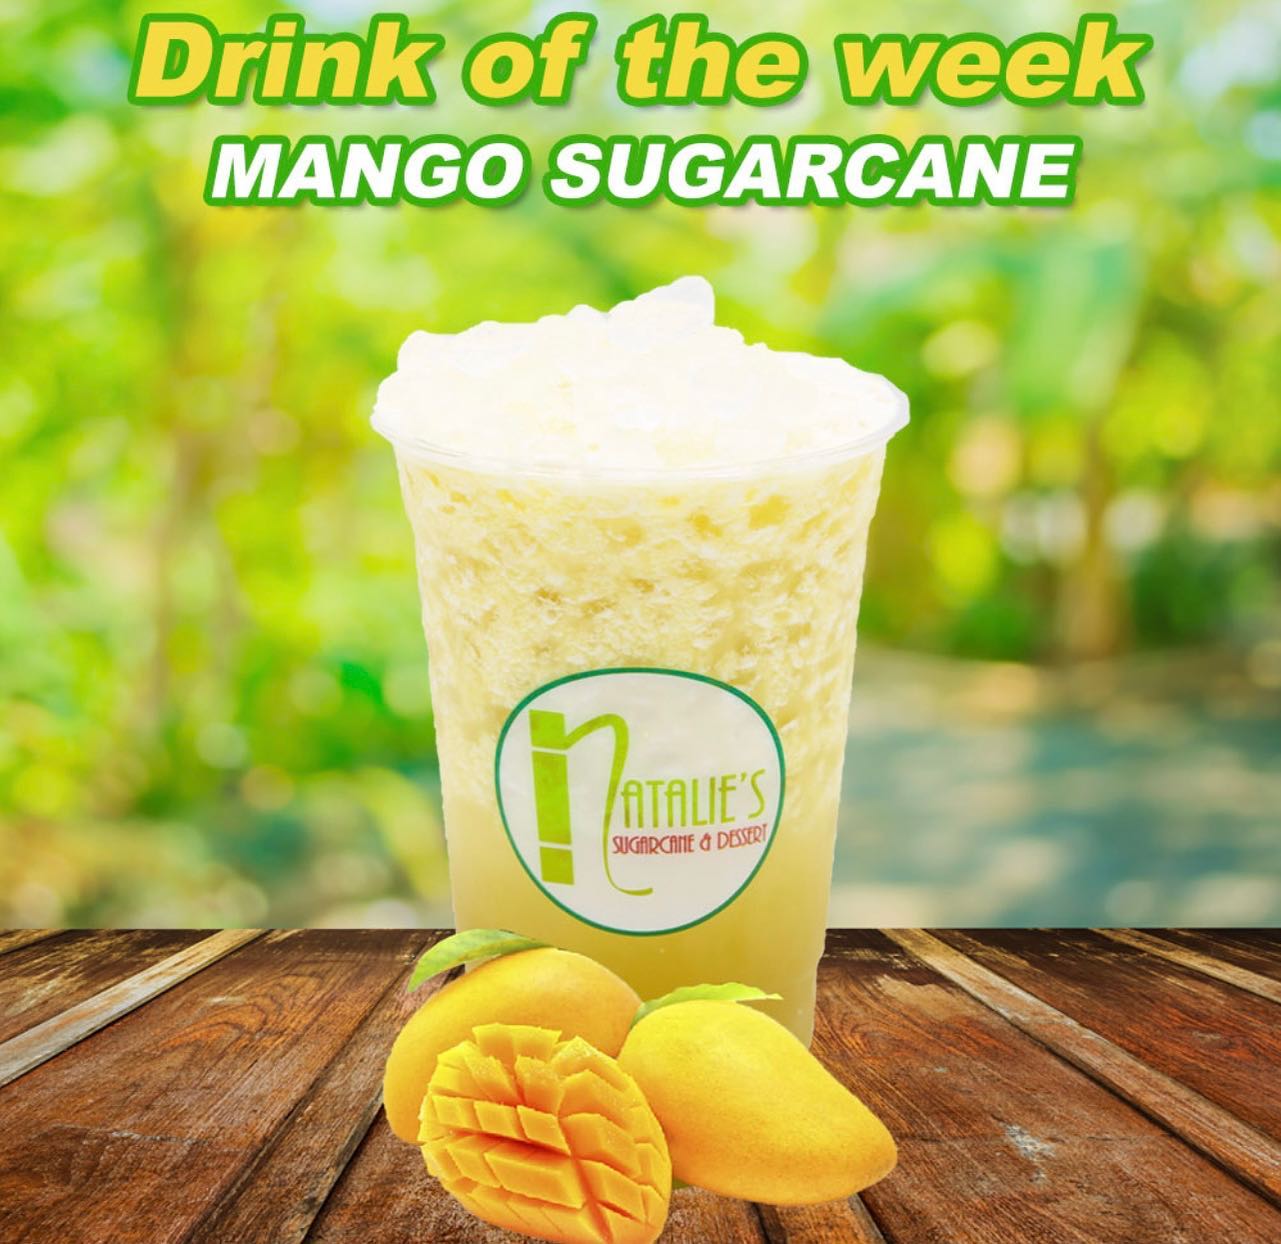 Mango Sugarcane